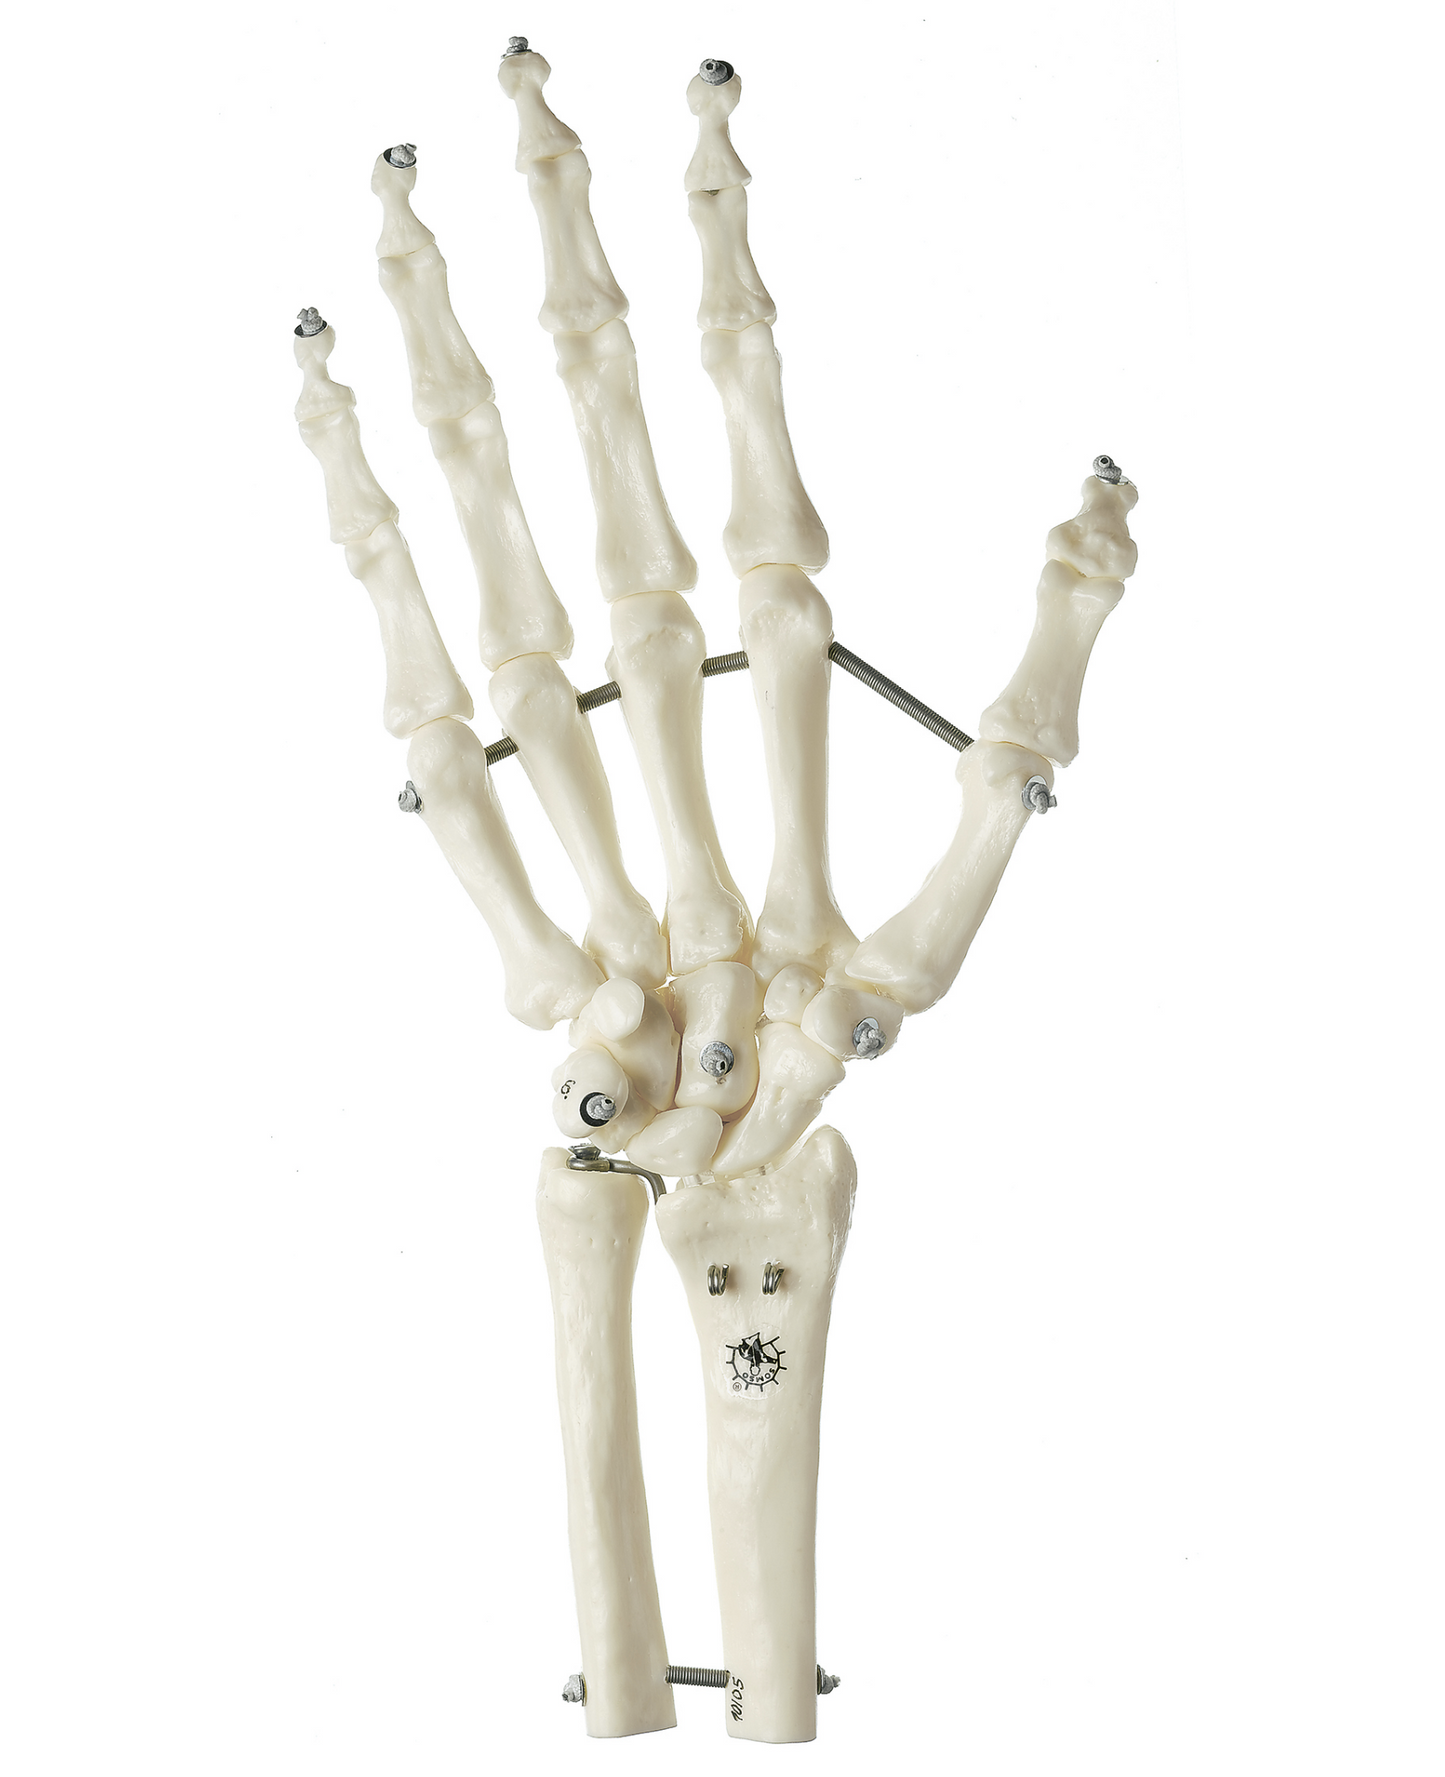 SOMSO skelettmodell av hand med en del av underarmsbenen monterade på resår